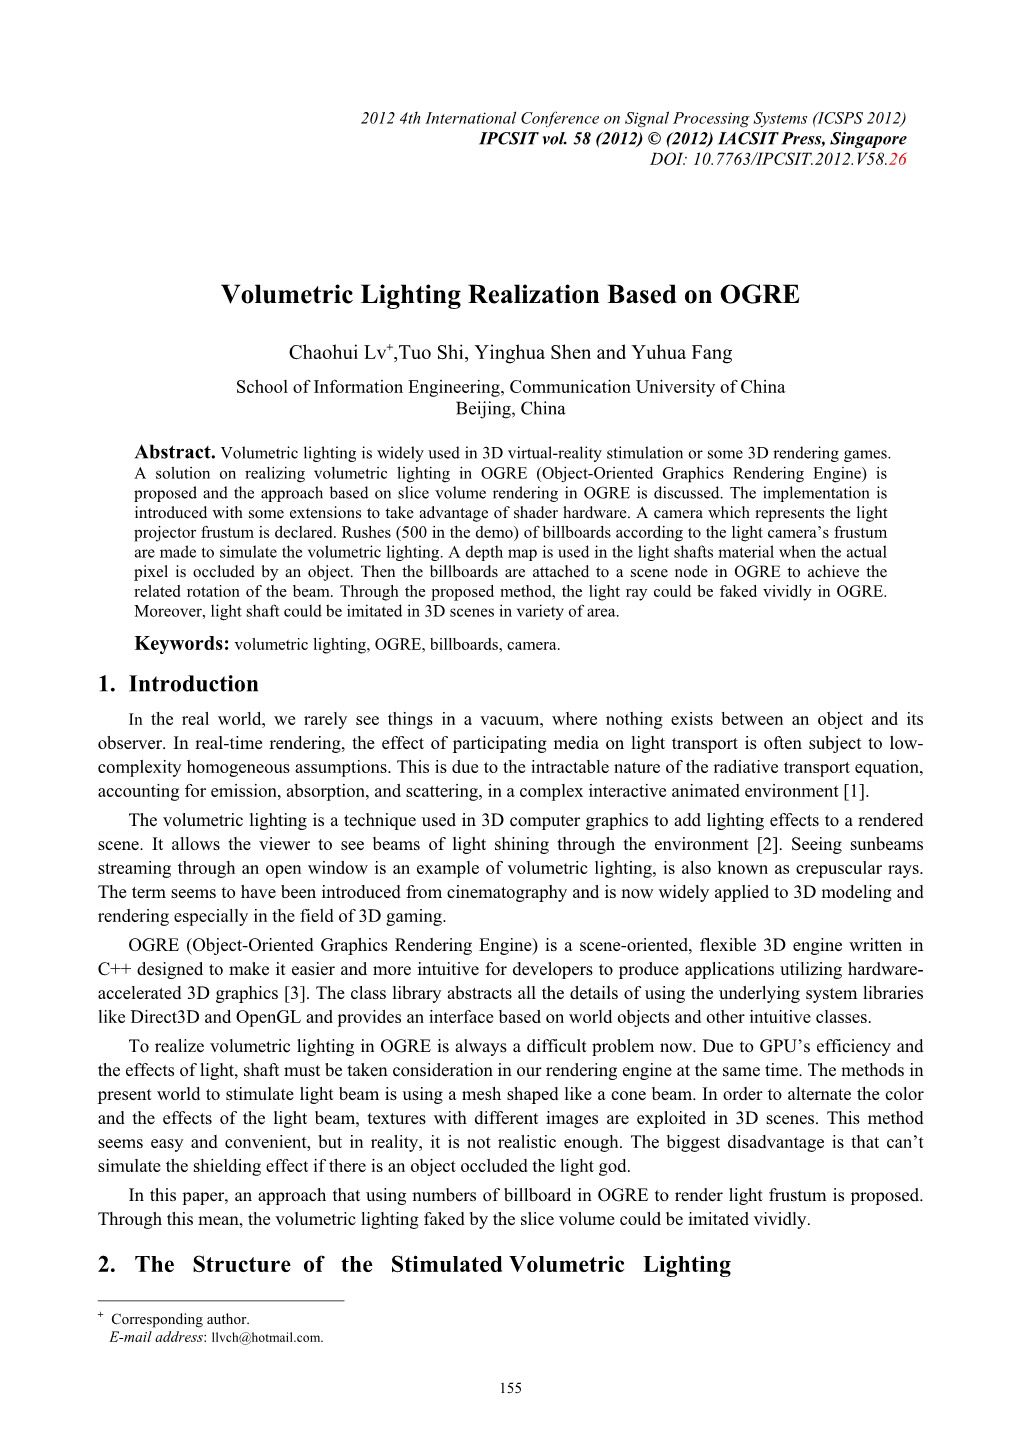 Volumetric Lighting Realization Based on OGRE